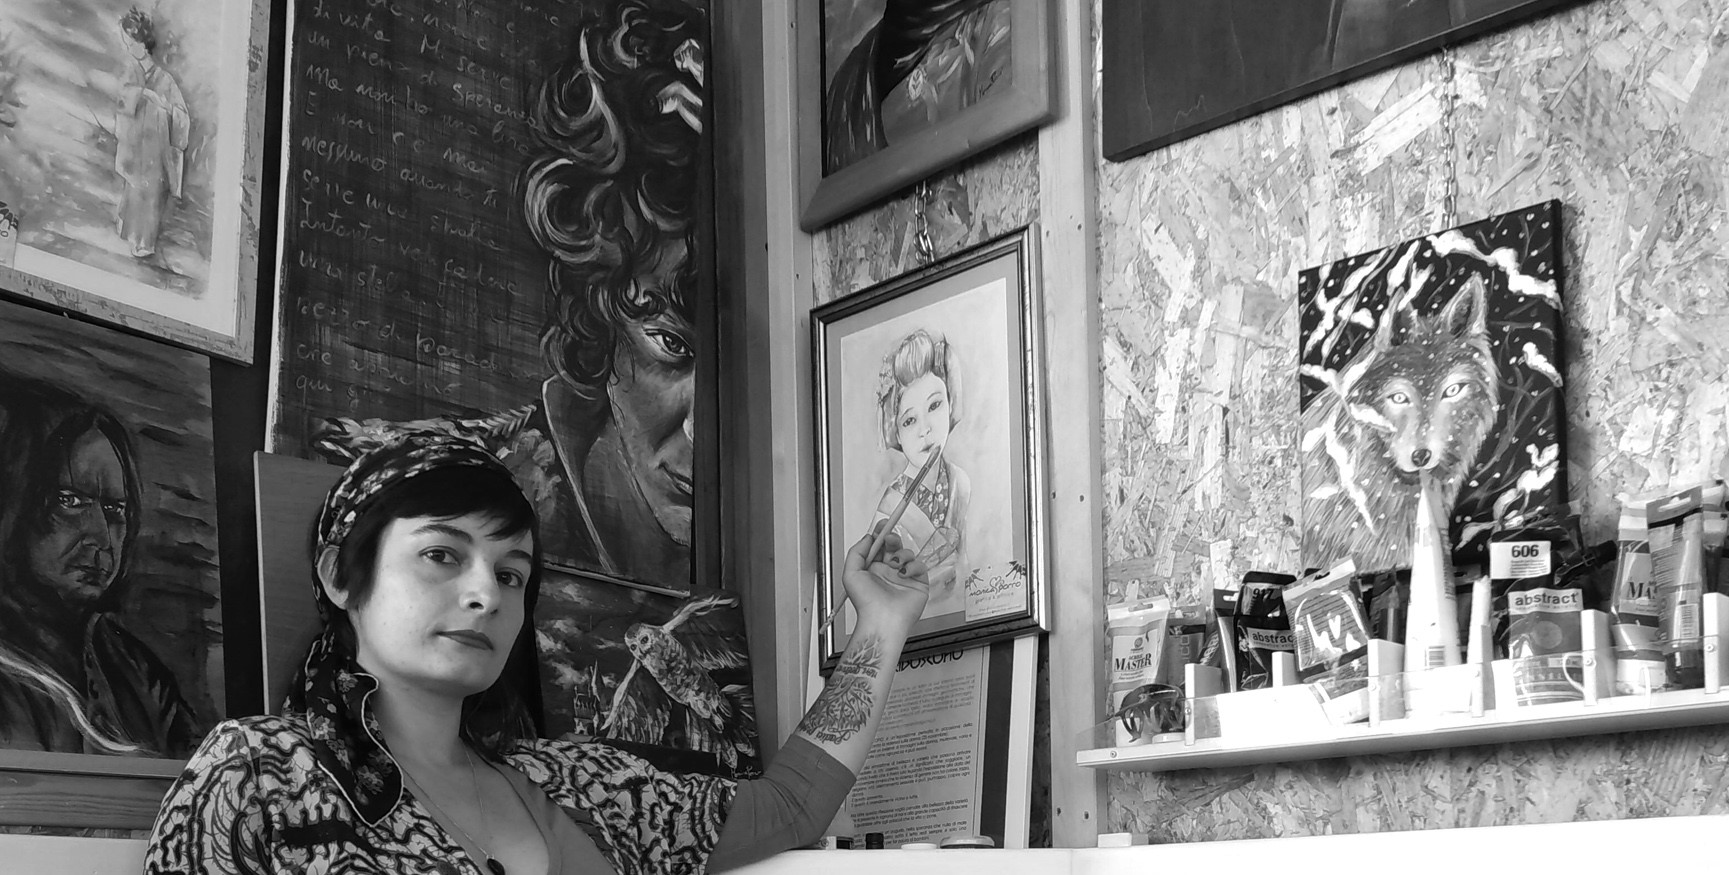 La pittrice seduta nel suo studio tra i quadri. Si notano sullo sfondo un dipinto che ritrae Severus Piton da Harry Potte, un ritratto di Ermal Meta con le parole di una canzone e un acquarello con una donna giapponese in kimono e il ritratto di un lupo tra i rami innevati. Allineati su un lato anche alcuni tubetti di colore.